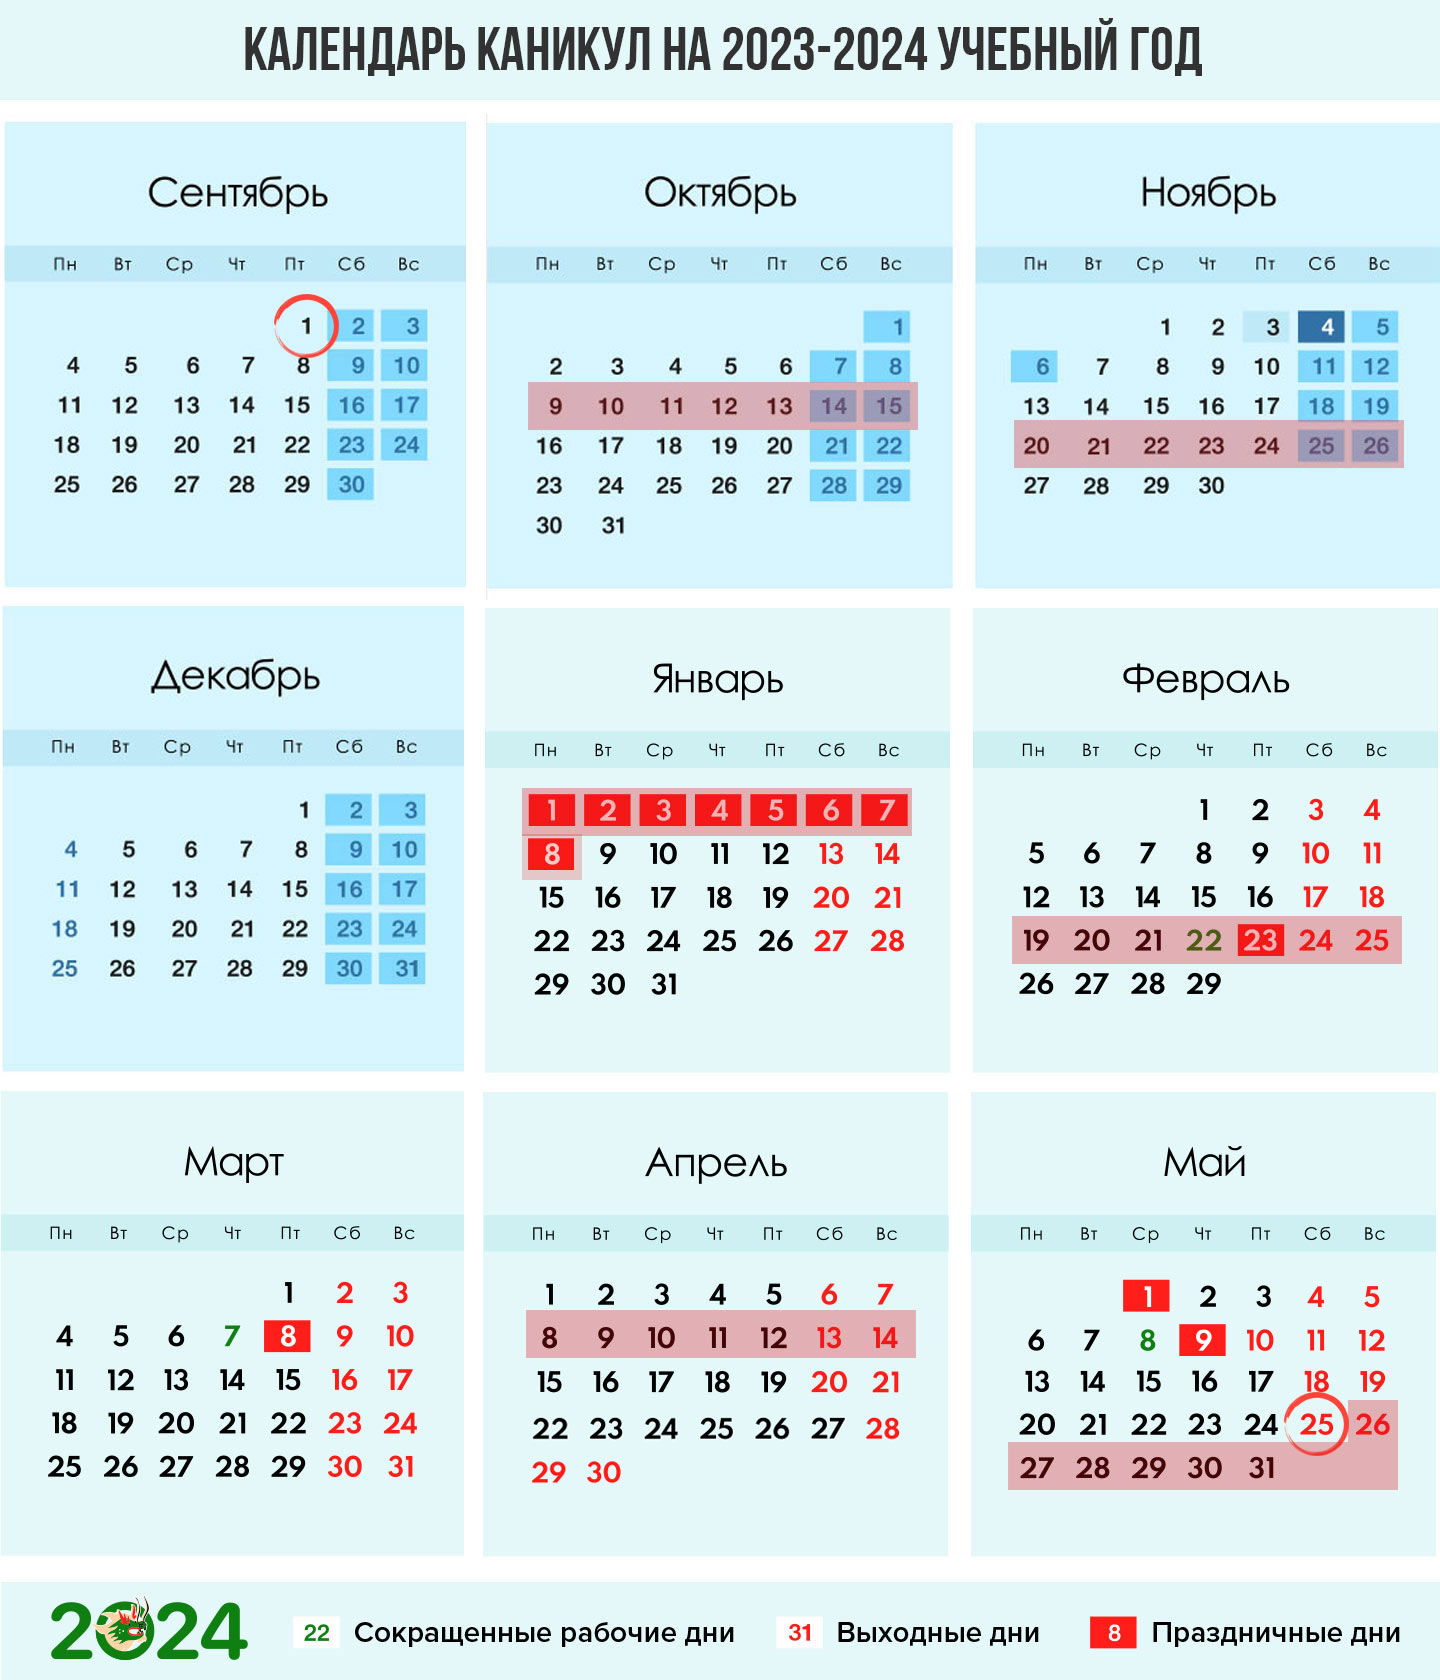 Календарь каникул по триместрам на 2023-2024 учебный год